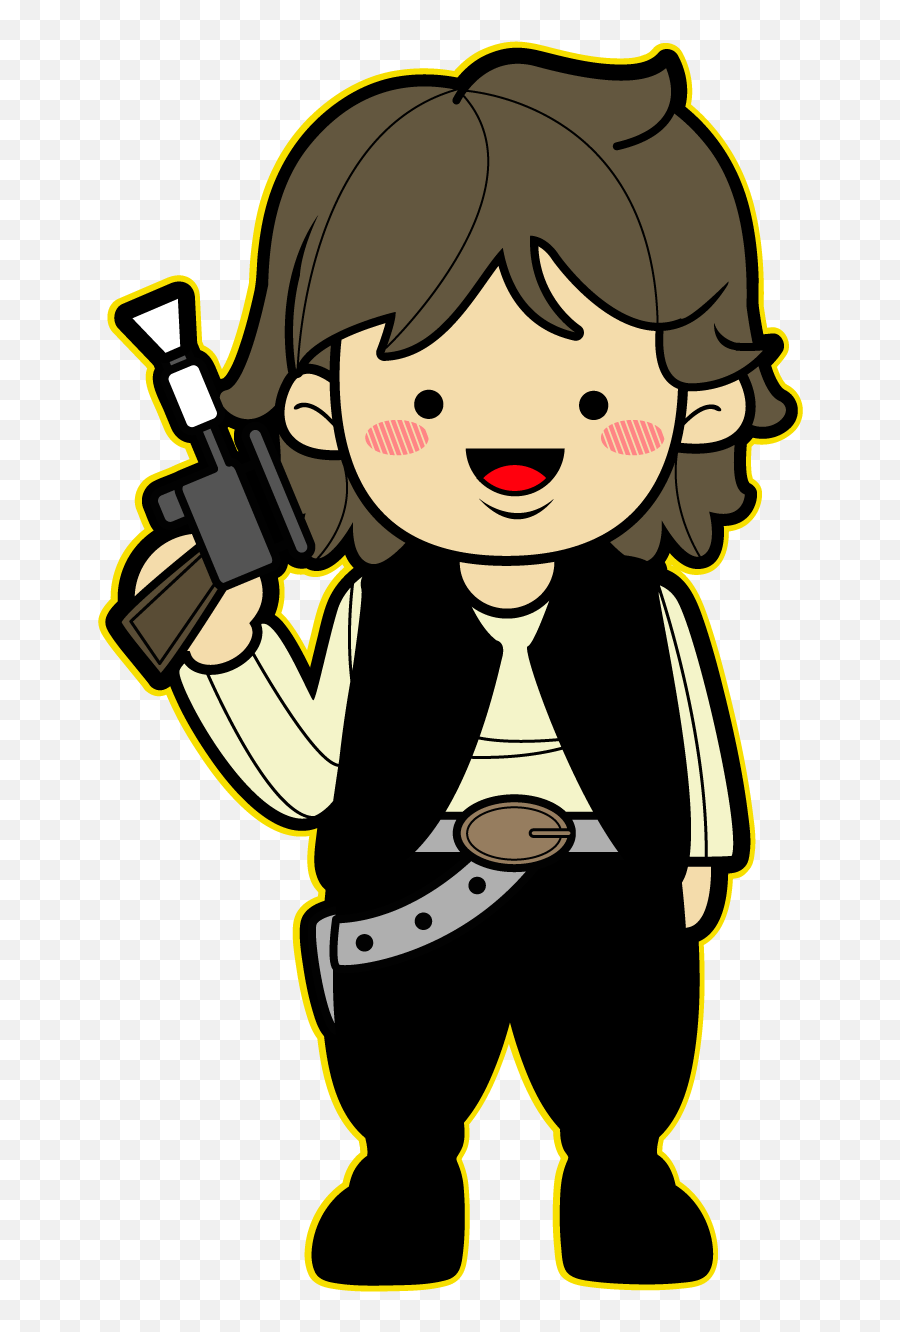 Star Wars Clipart Kawaii - Star Wars Png Personagens Emoji,Star Wars Clipart